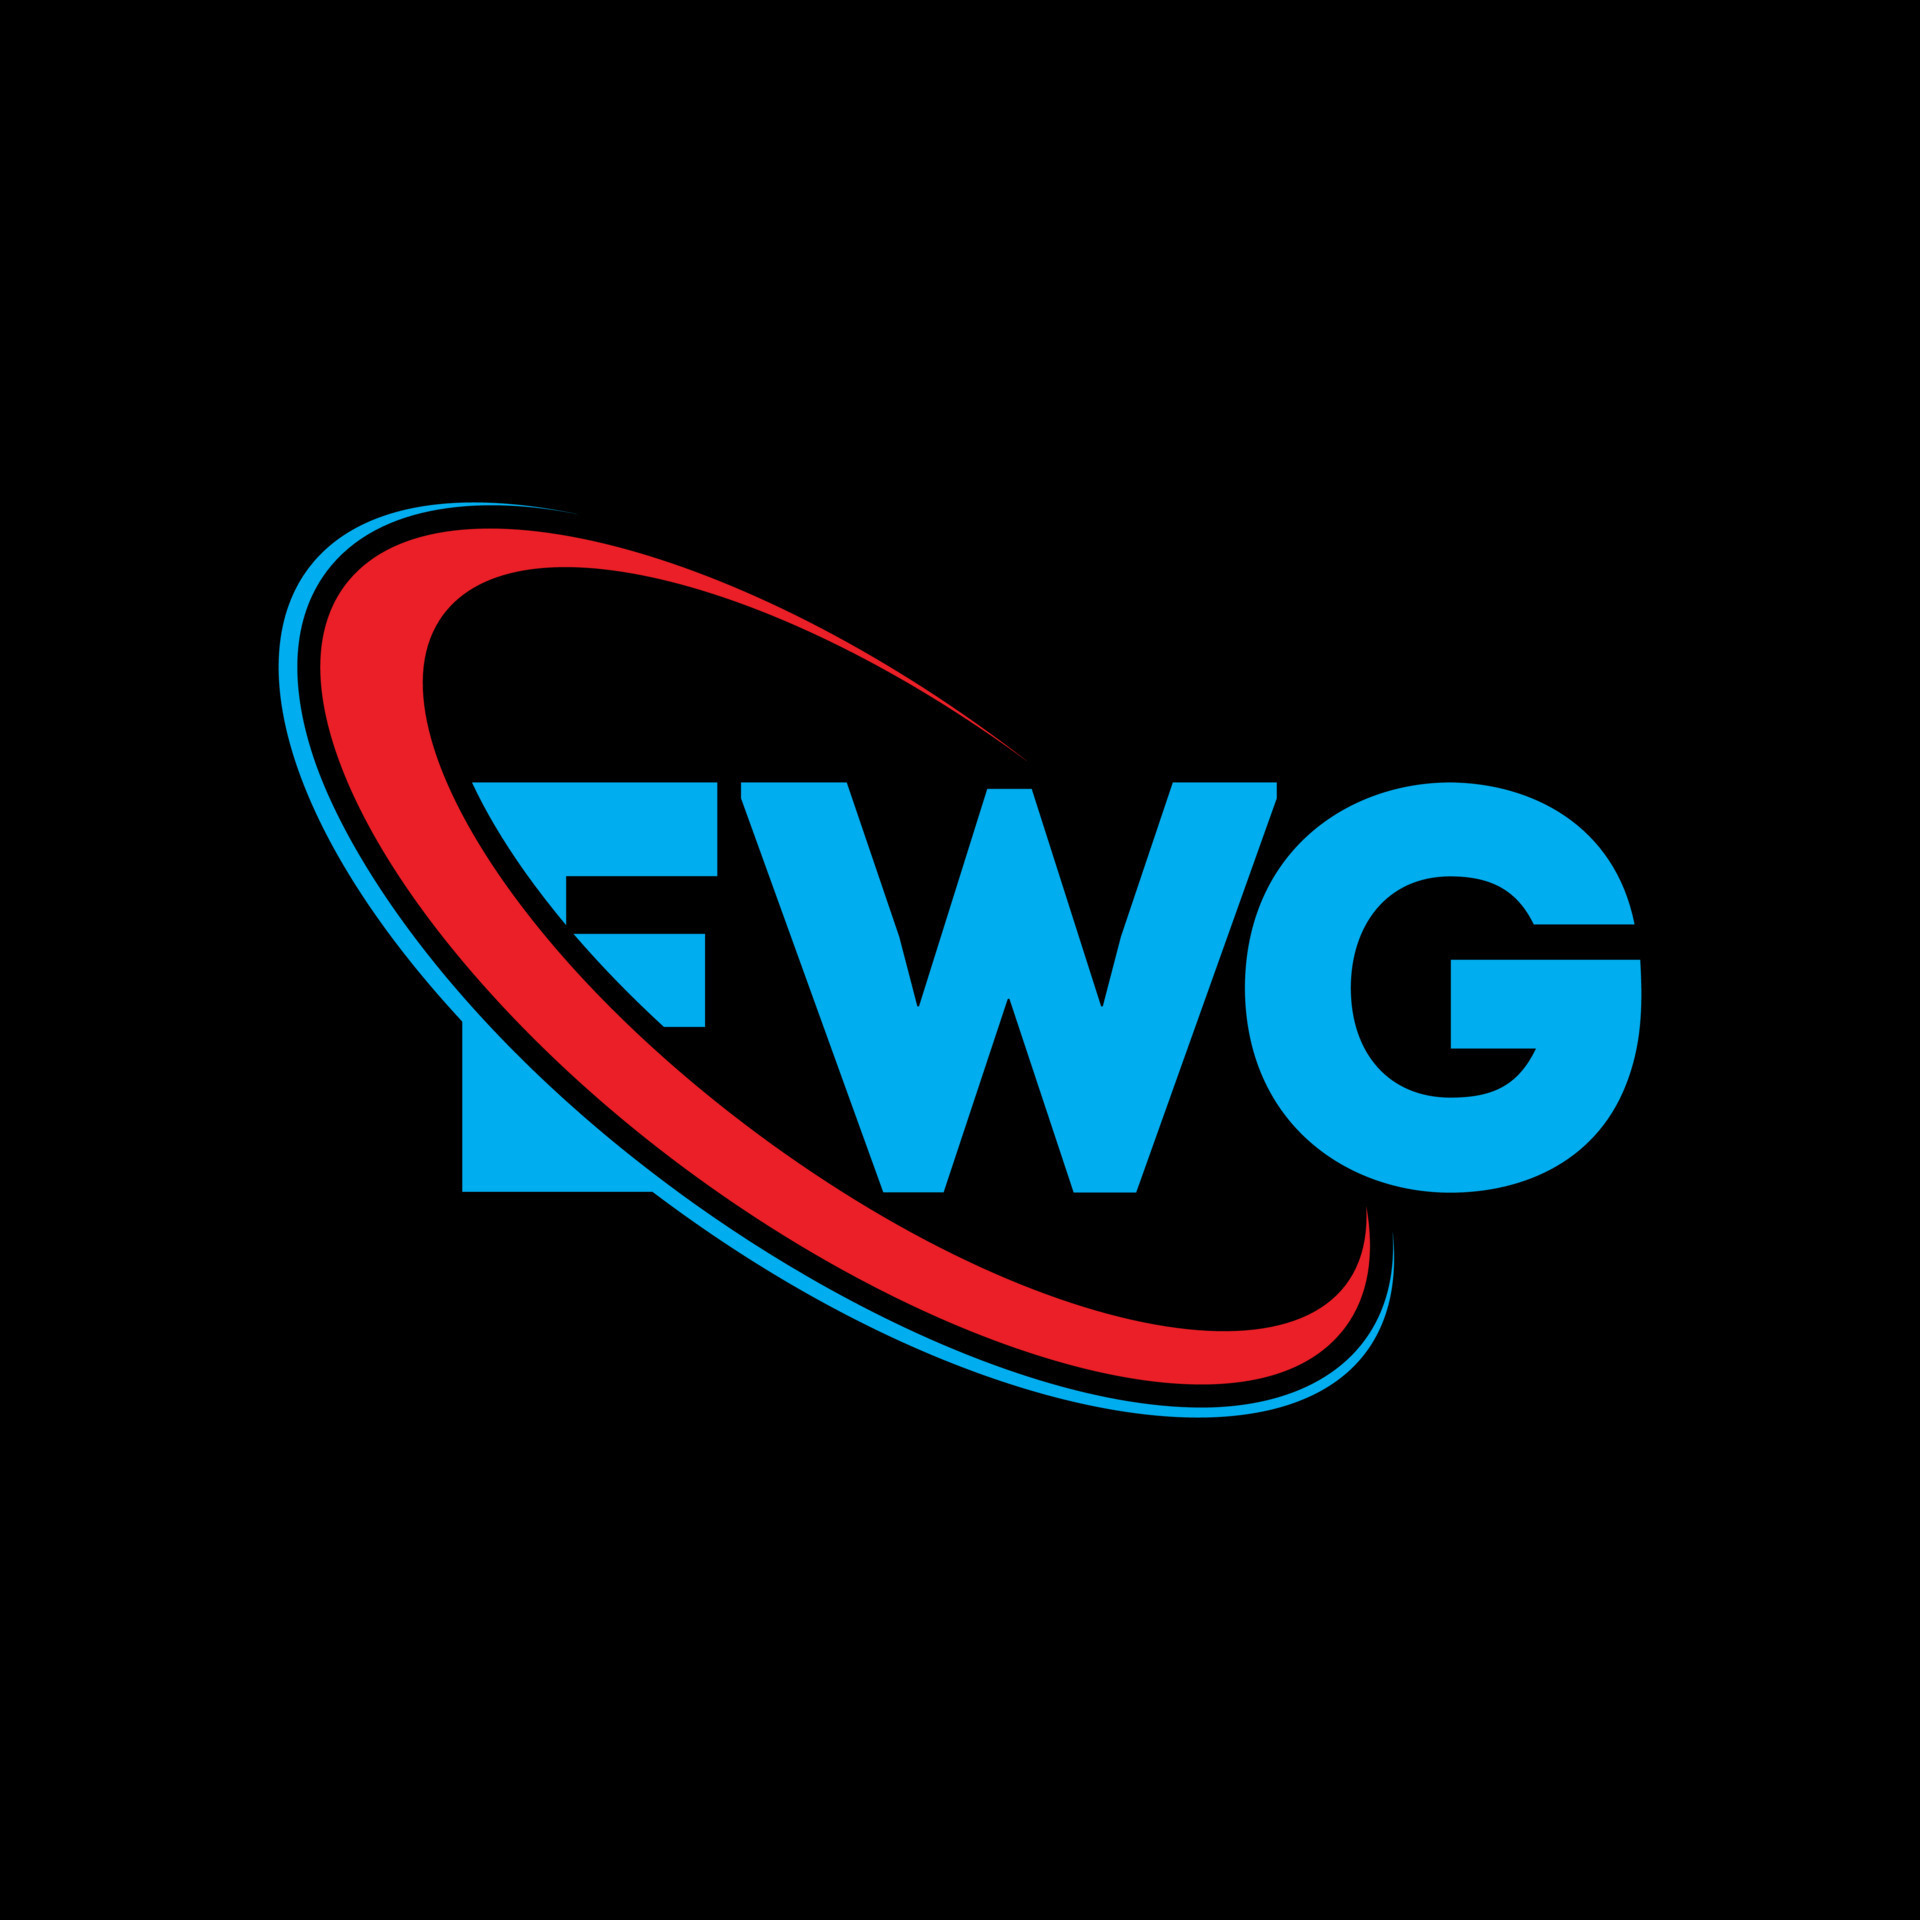 EWG logo. EWG letter. EWG letter logo design. Initials EWG logo